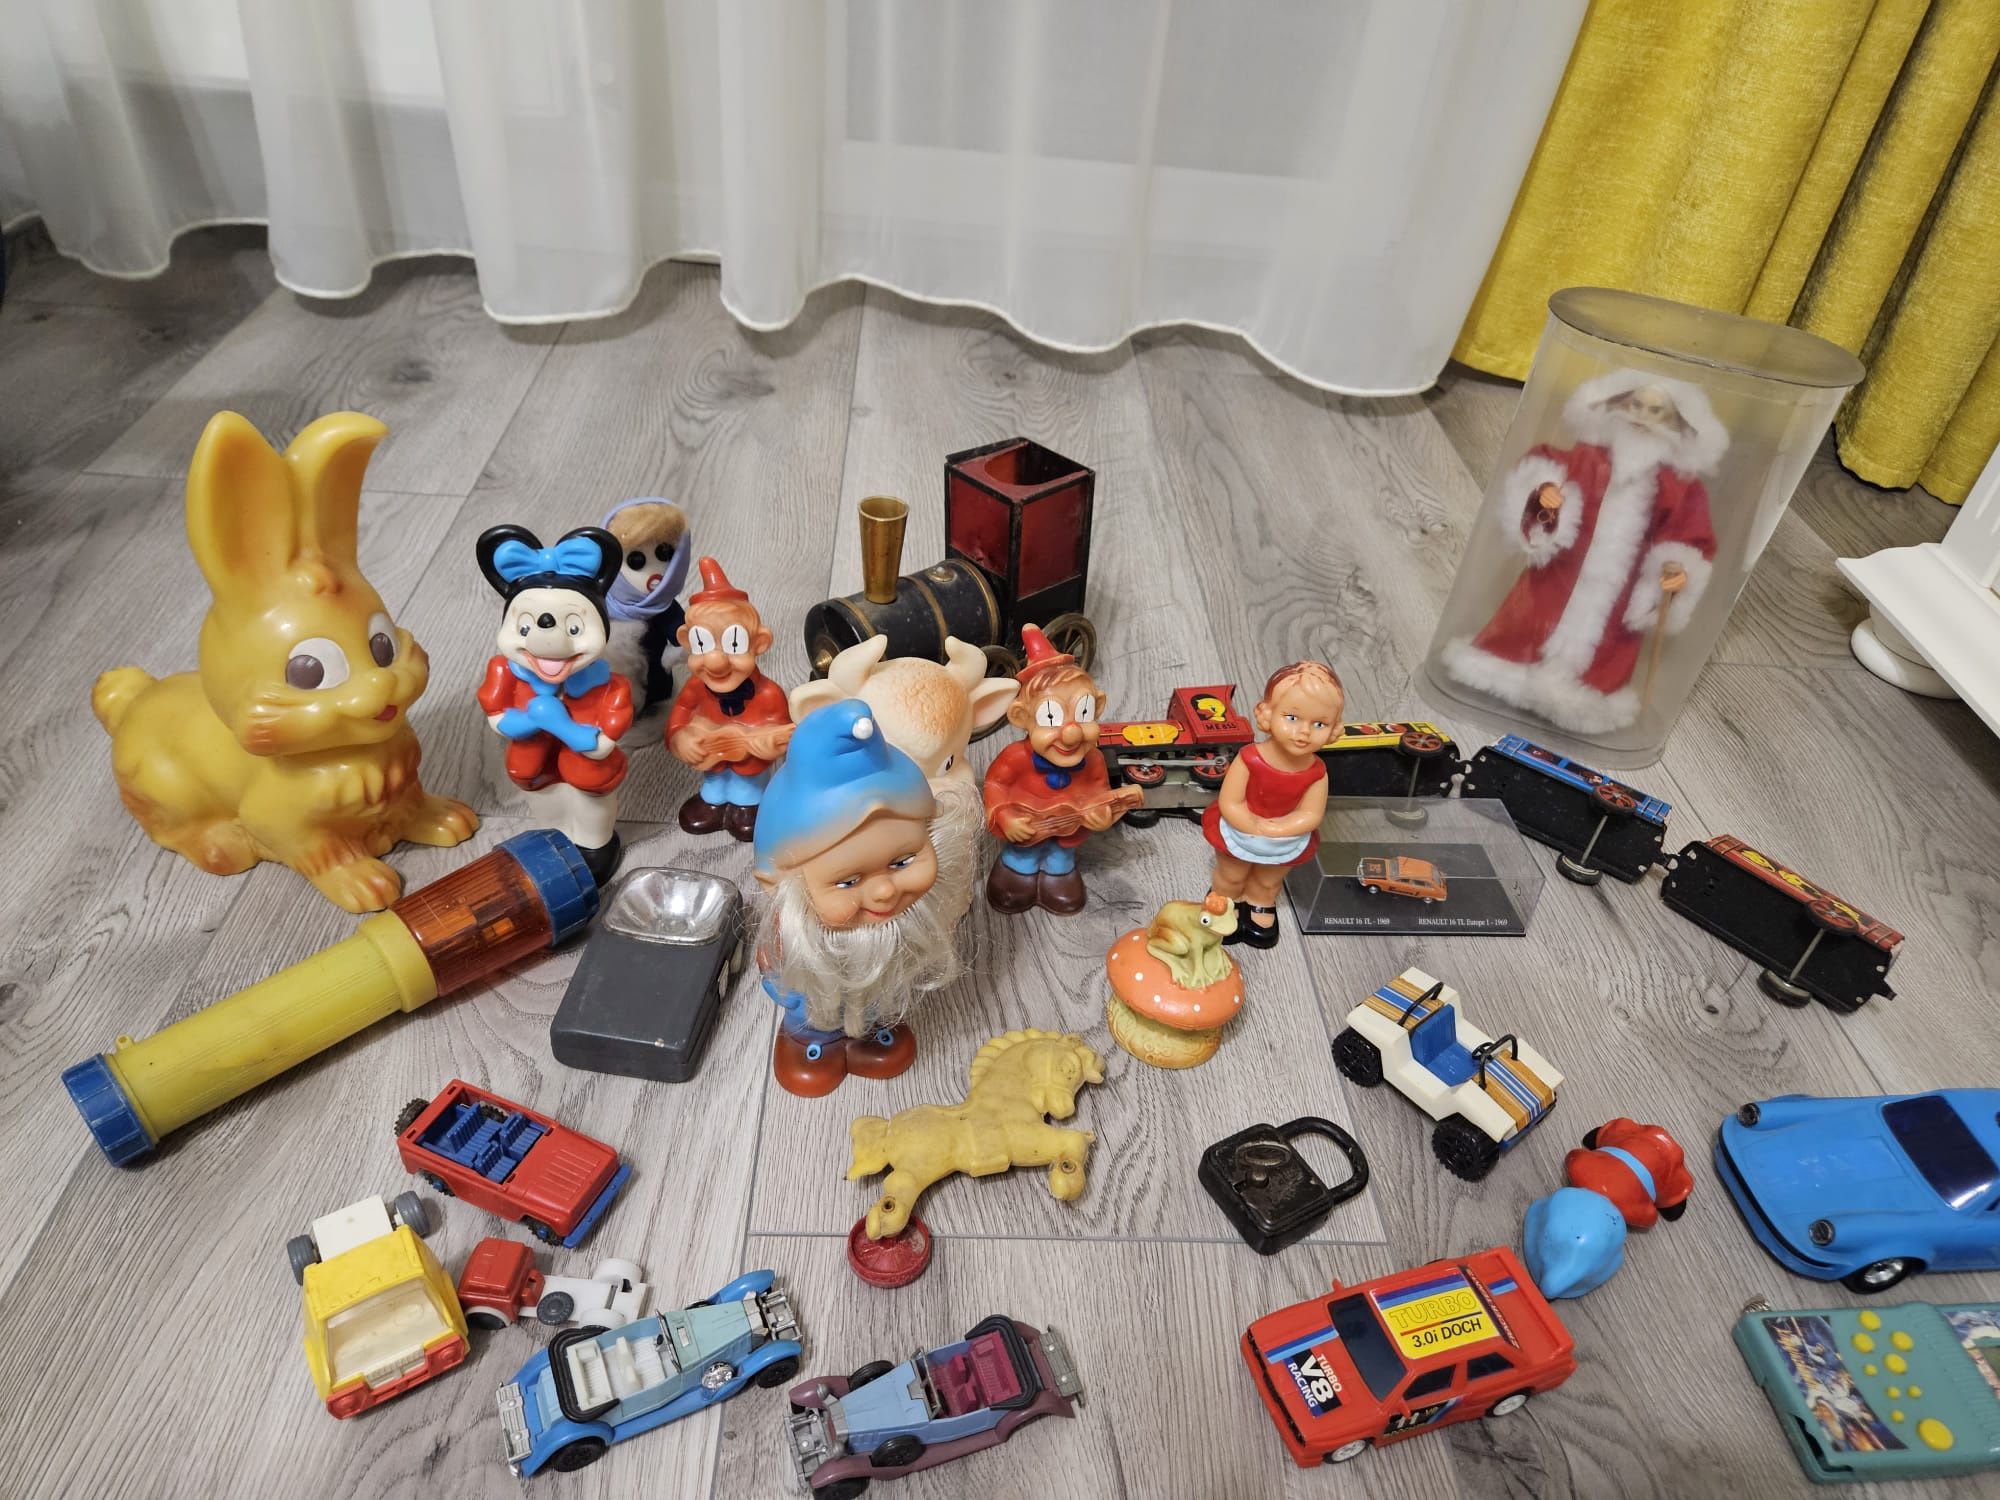 Jucării și obiecte vechi românești